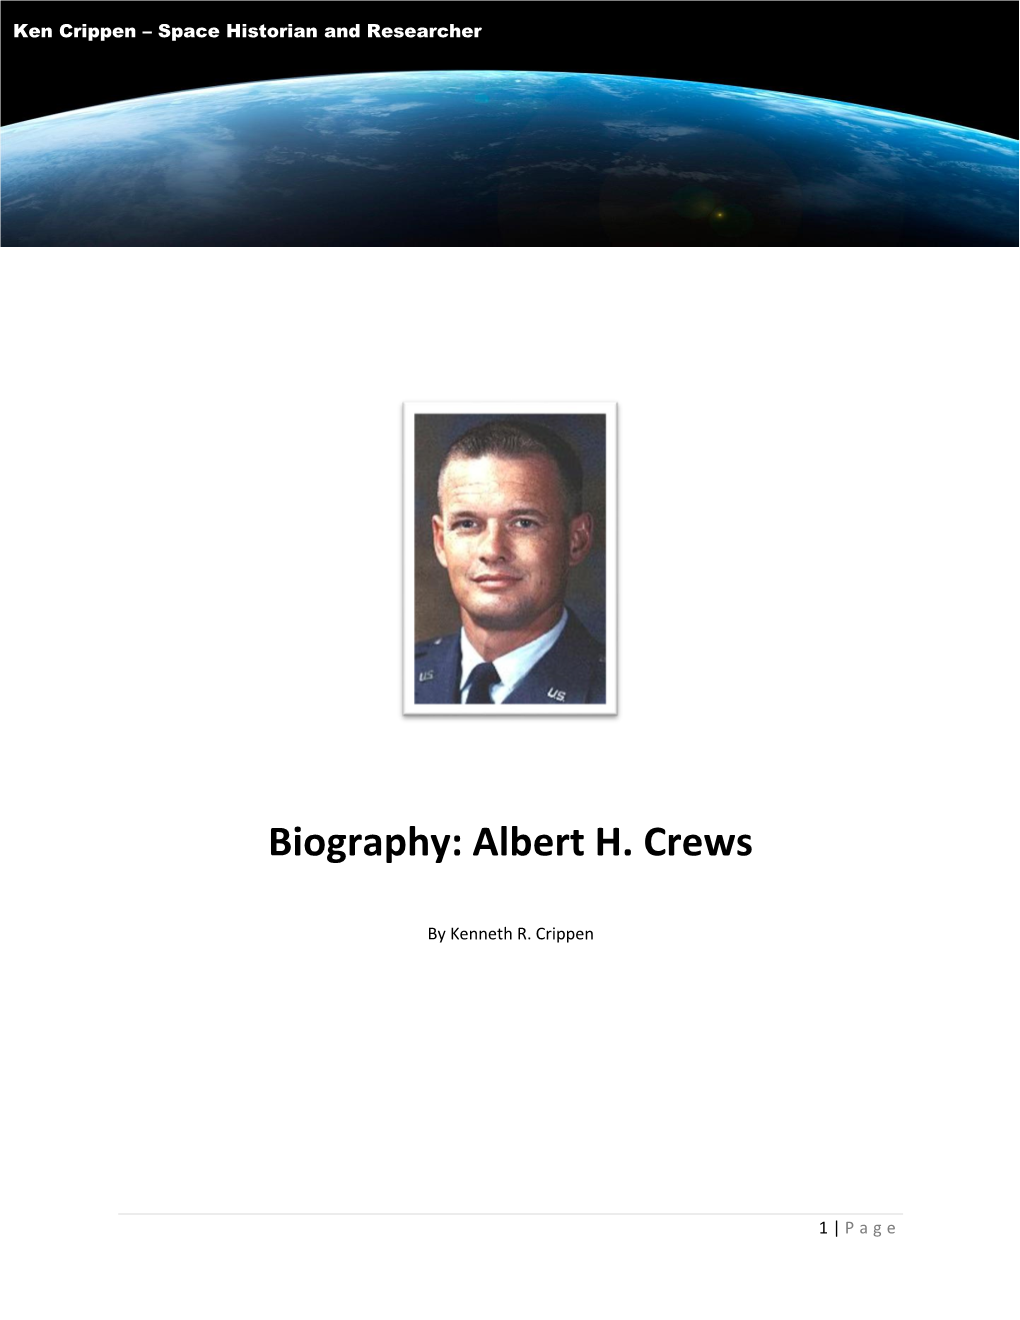 Albert H. Crews